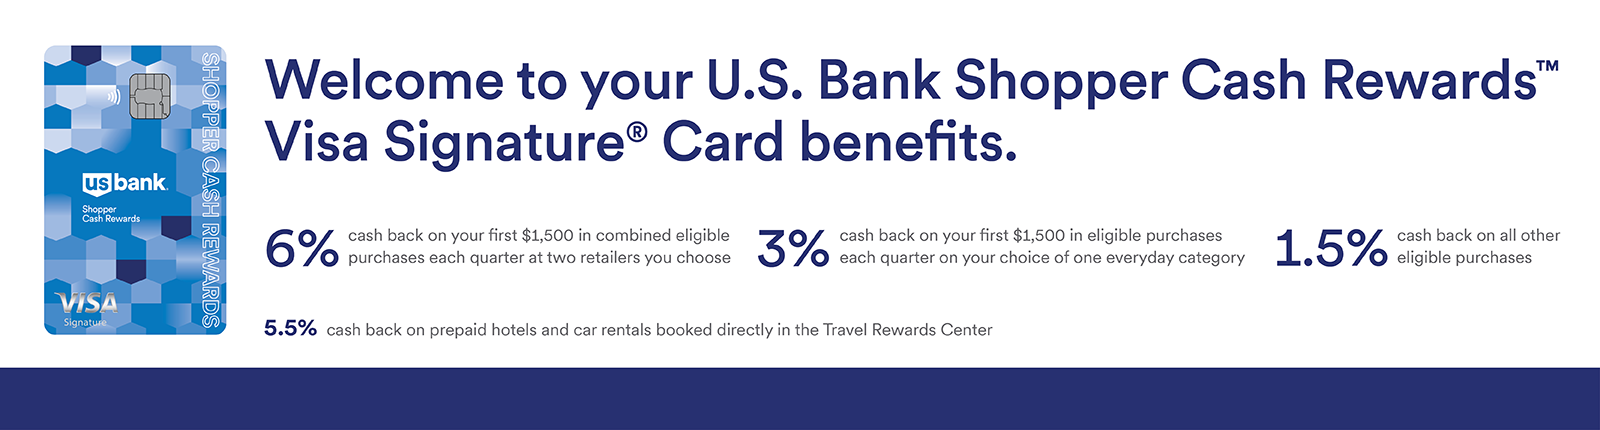 U.S. Bank Shopper Cash Rewards Visa Signature® Card